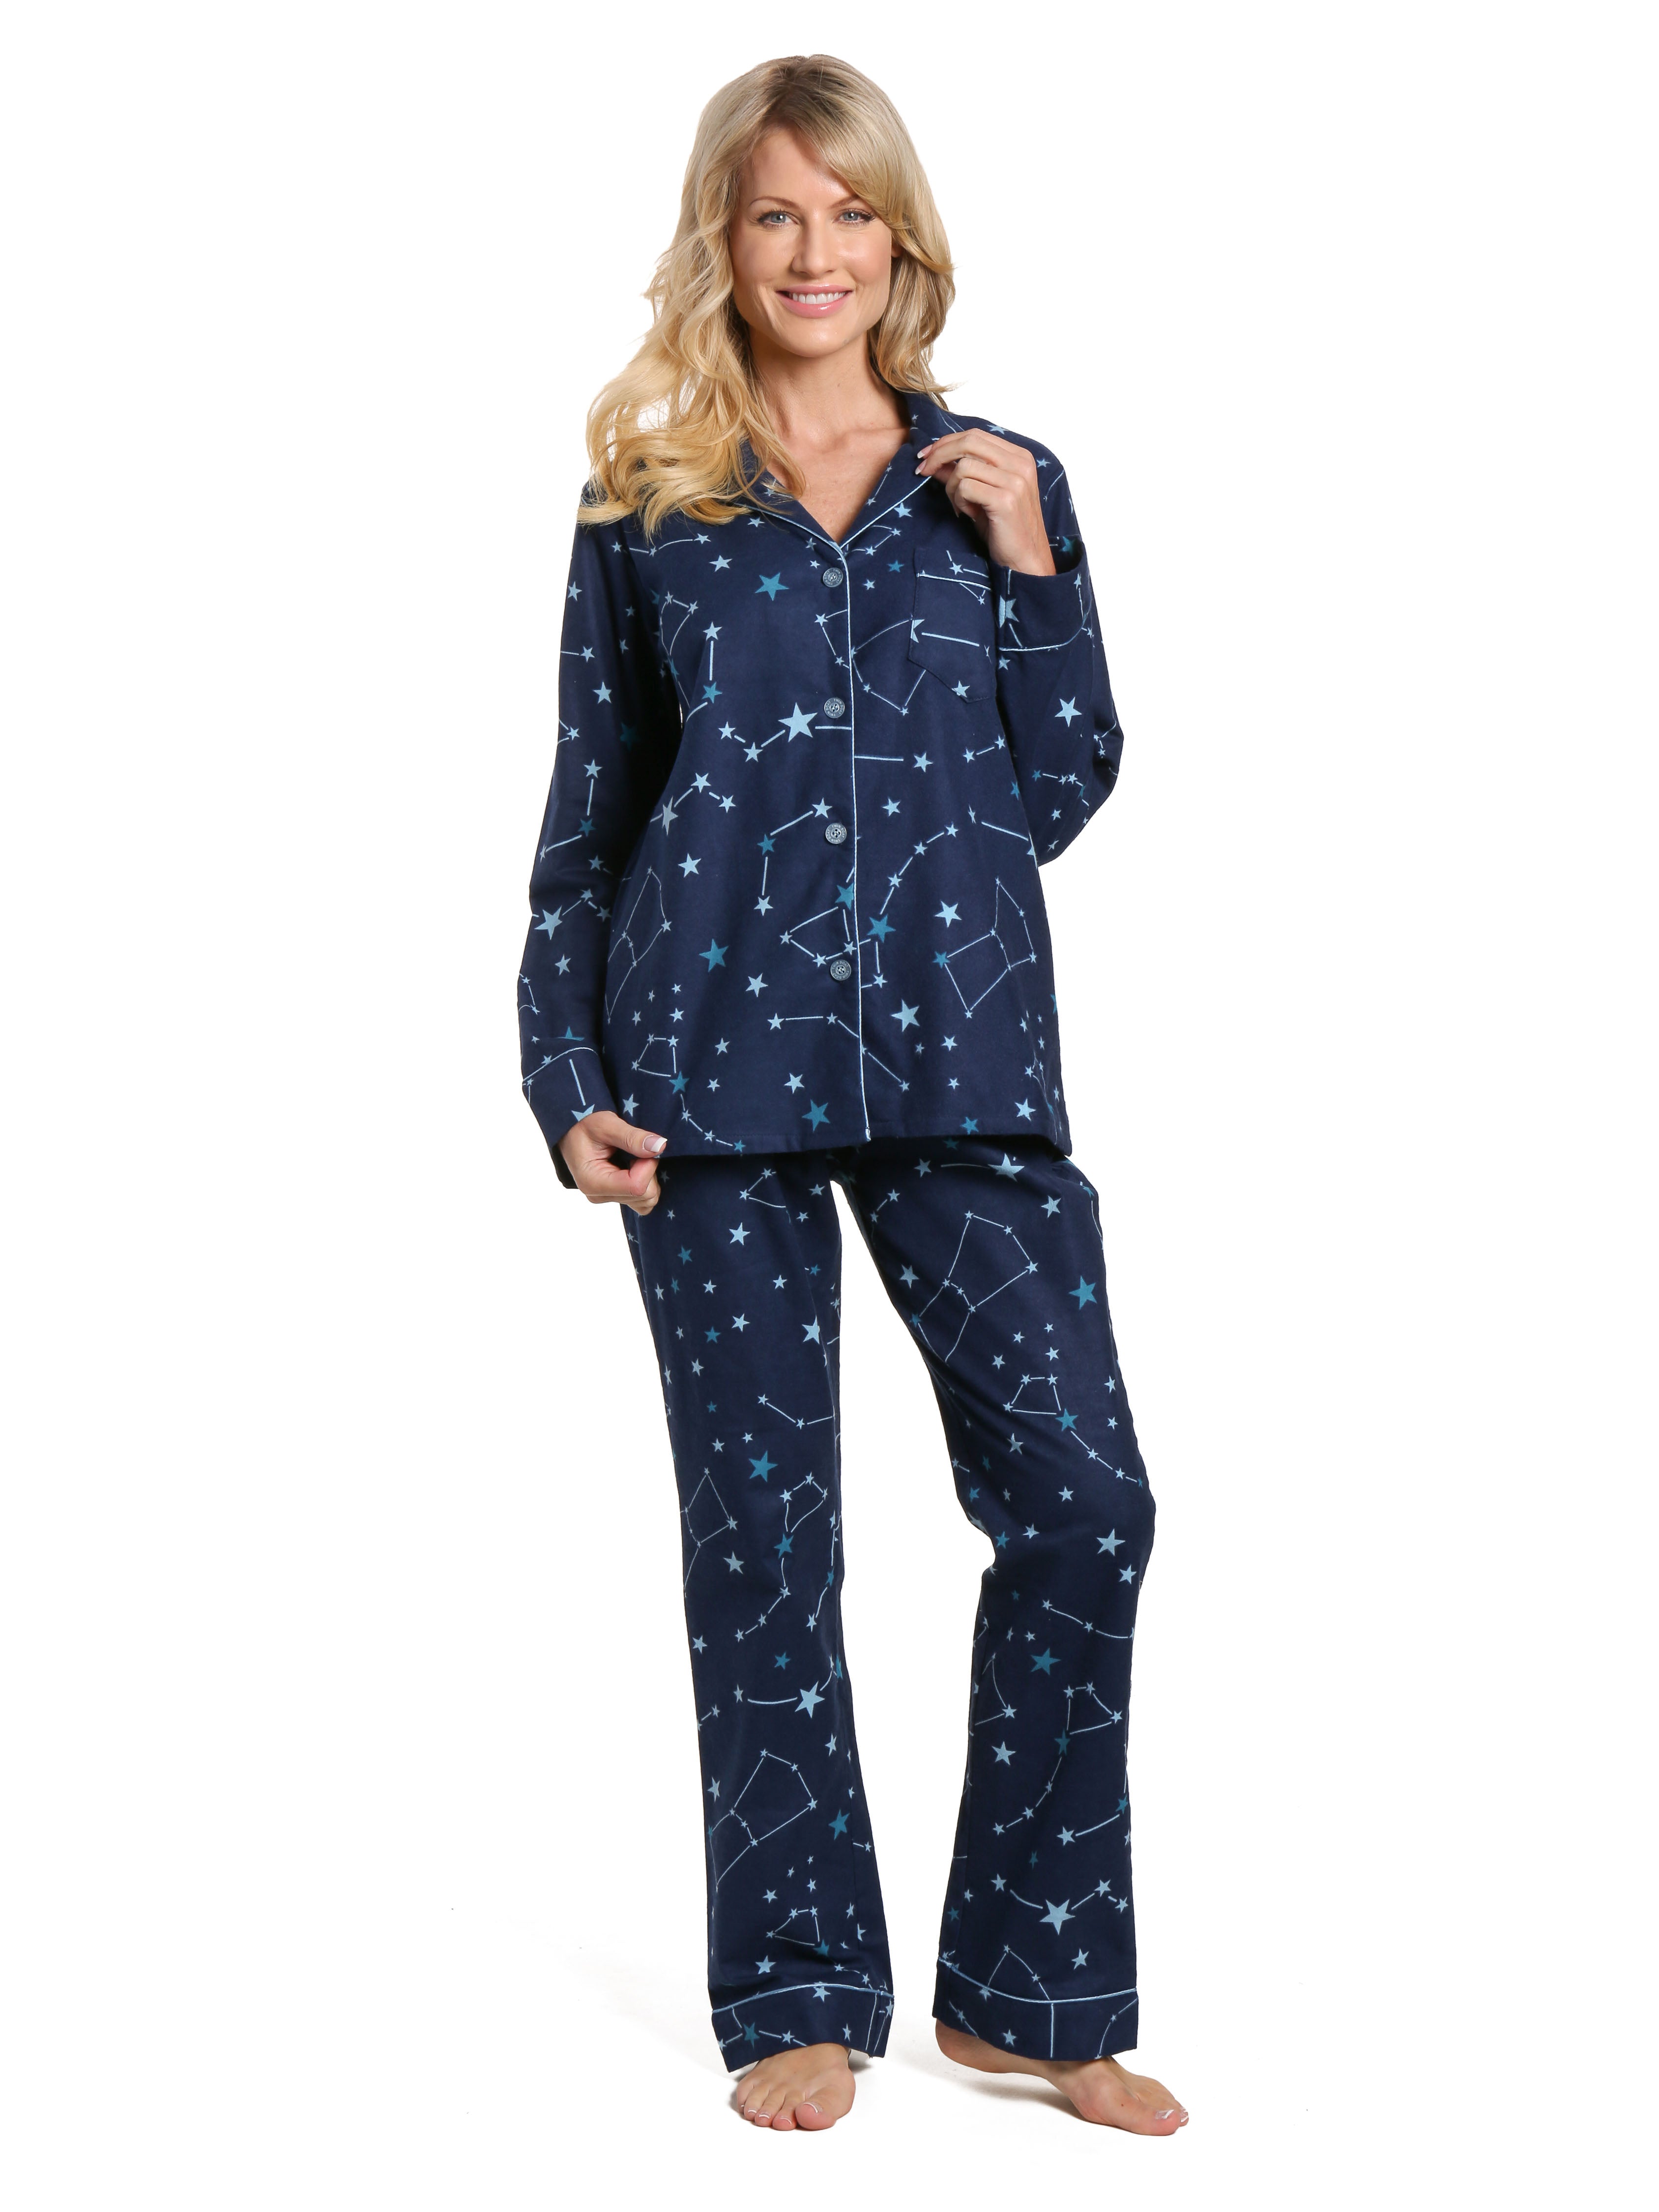 Women's 100% Cotton Flannel Pajama Sleepwear Set - Constellations